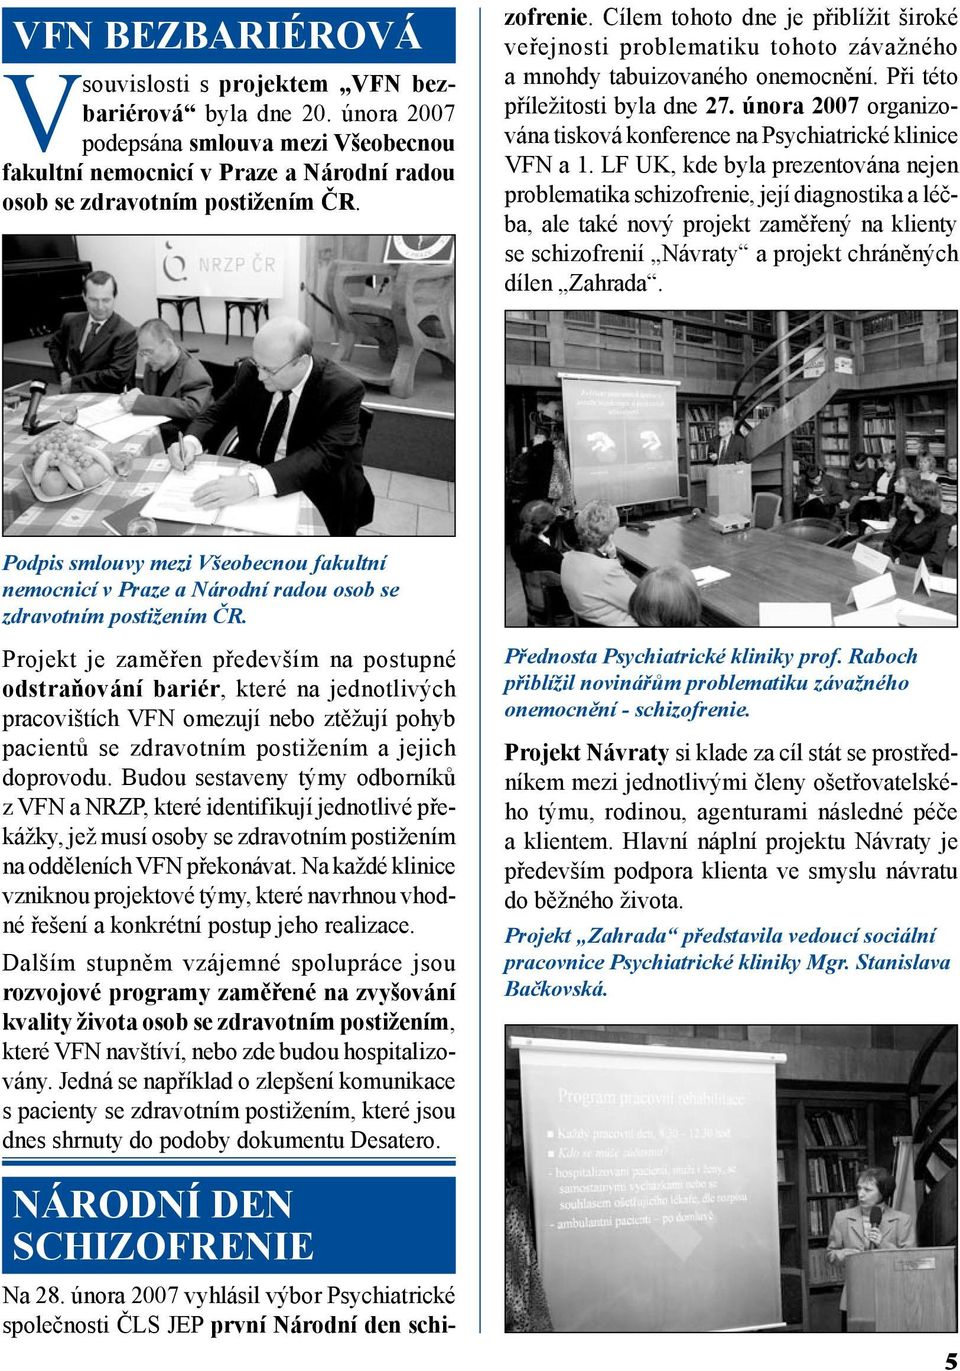 února 2007 organizována tisková konference na Psychiatrické klinice VFN a 1.